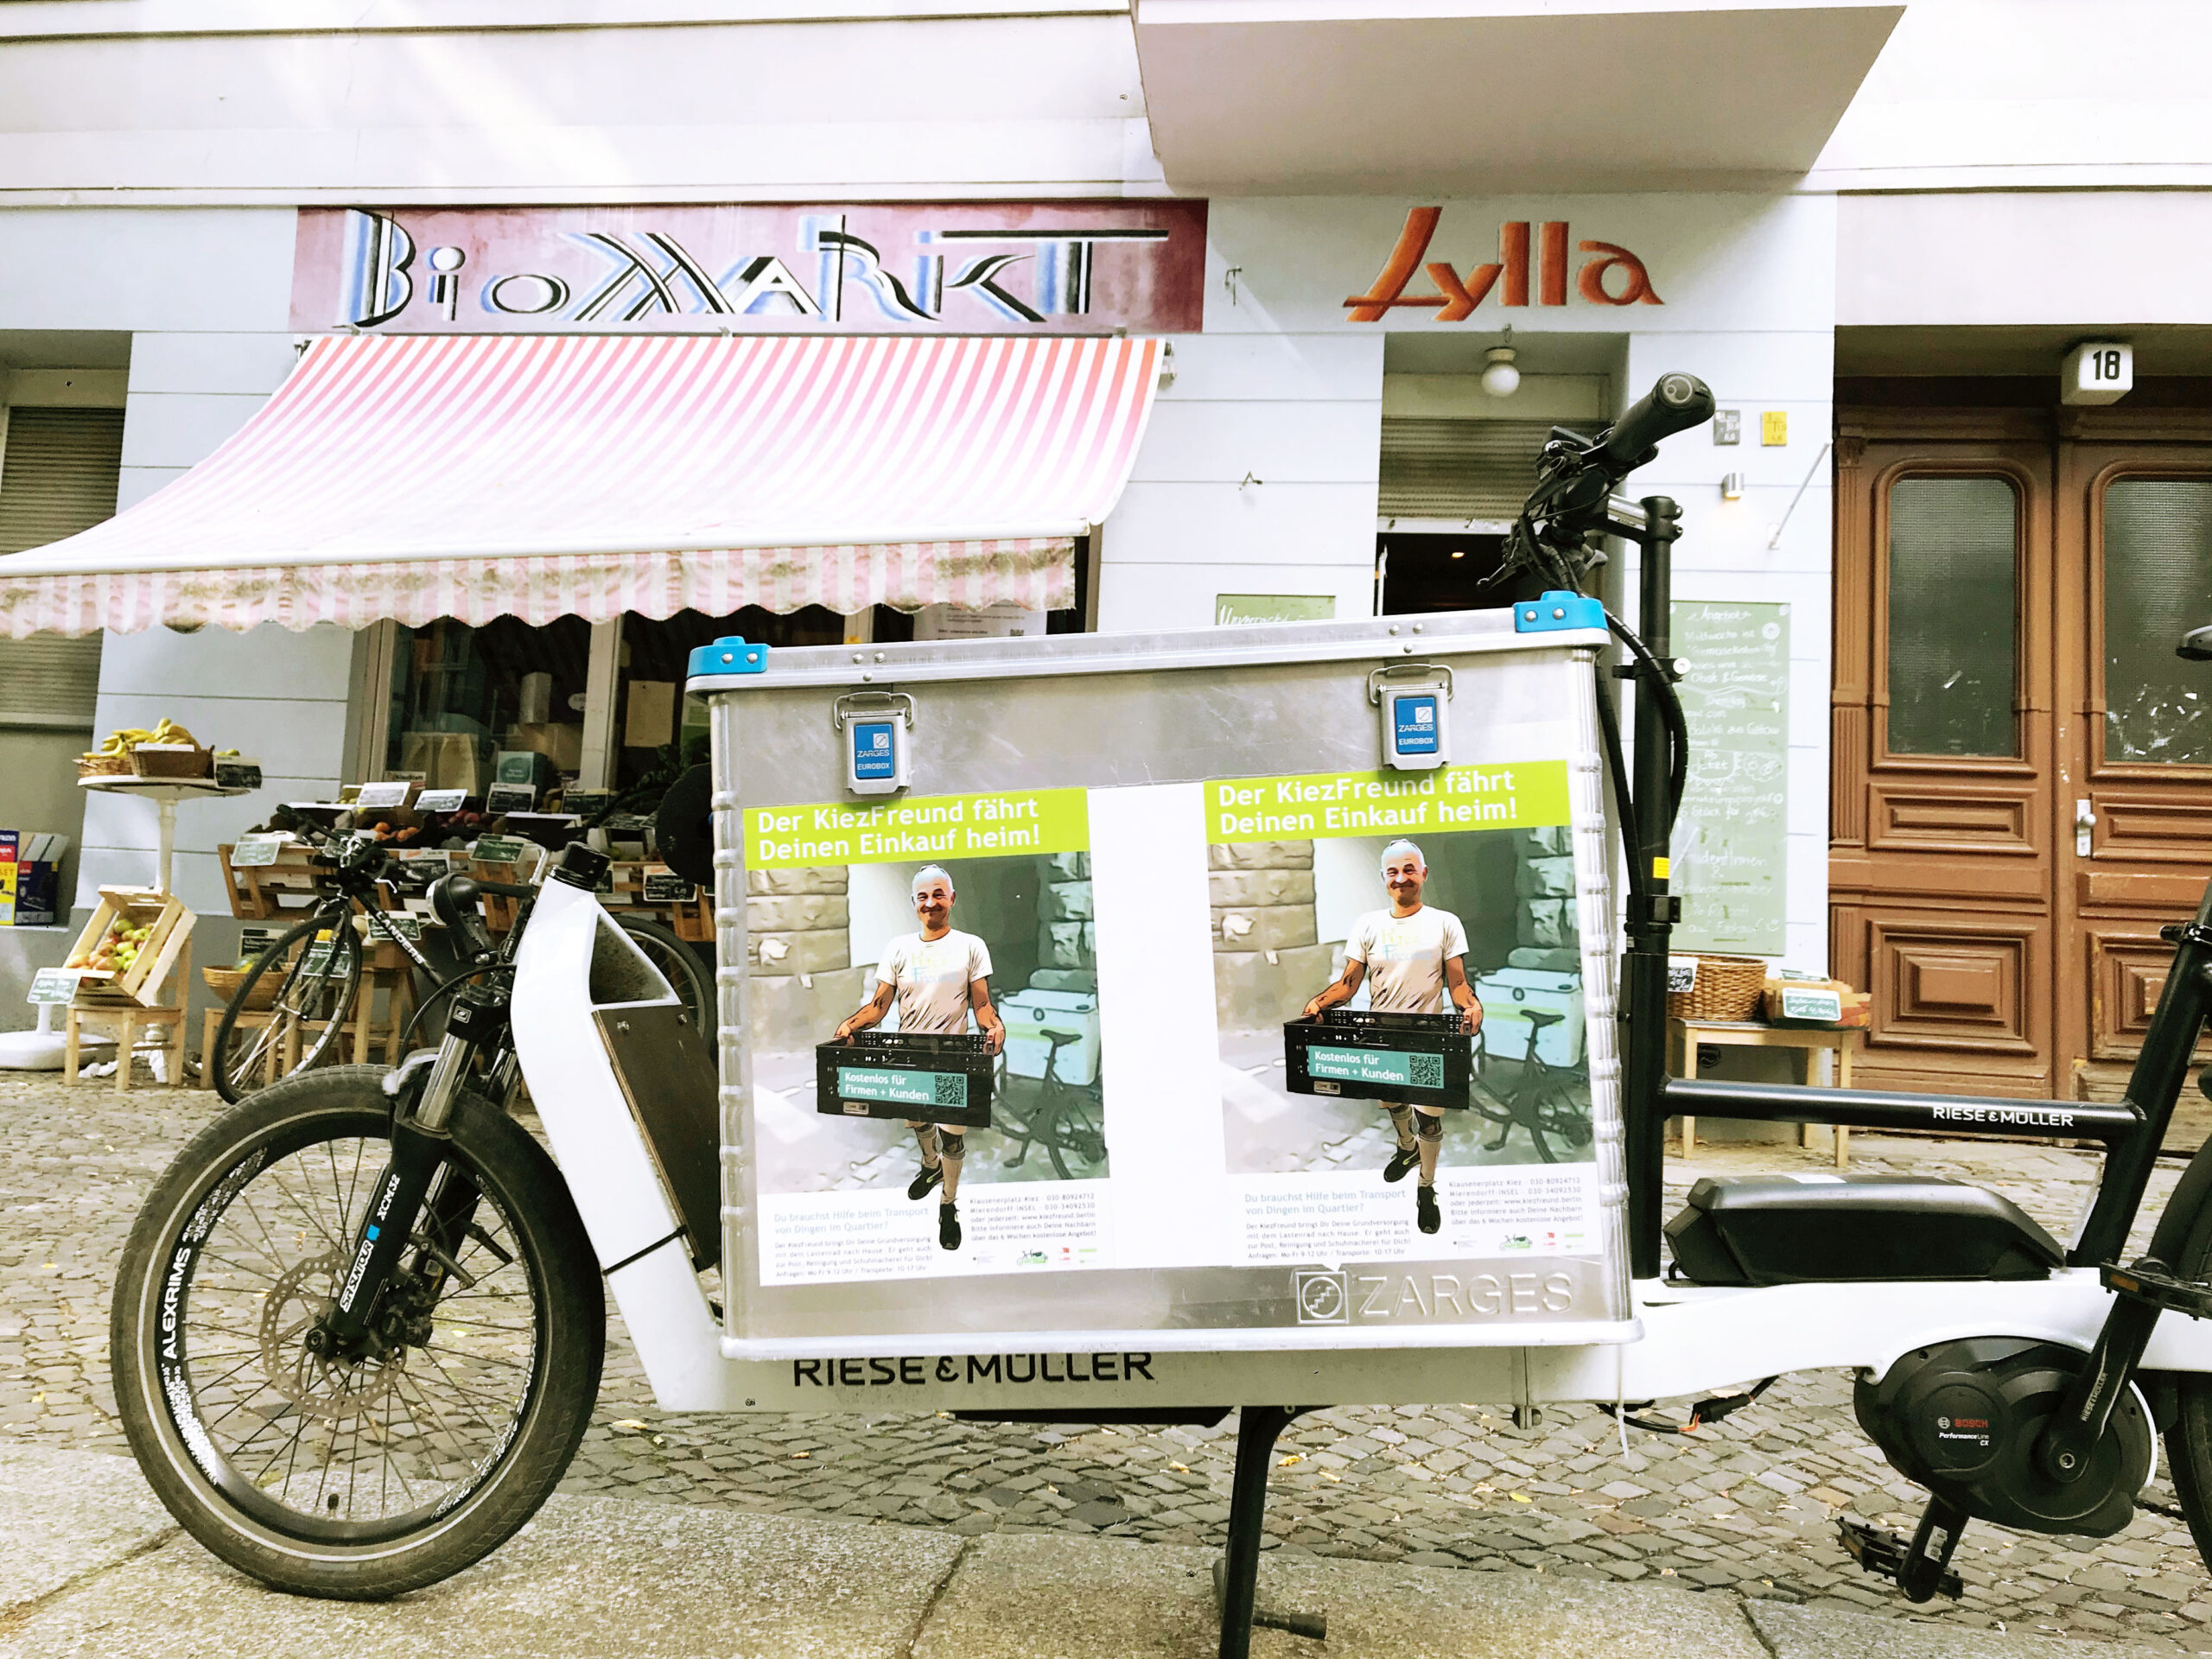 Ein Lastenrad steht vor einem Biomarkt, auf der Lastenradbox sind zwei Plakate vom KiezFreund befestigt.